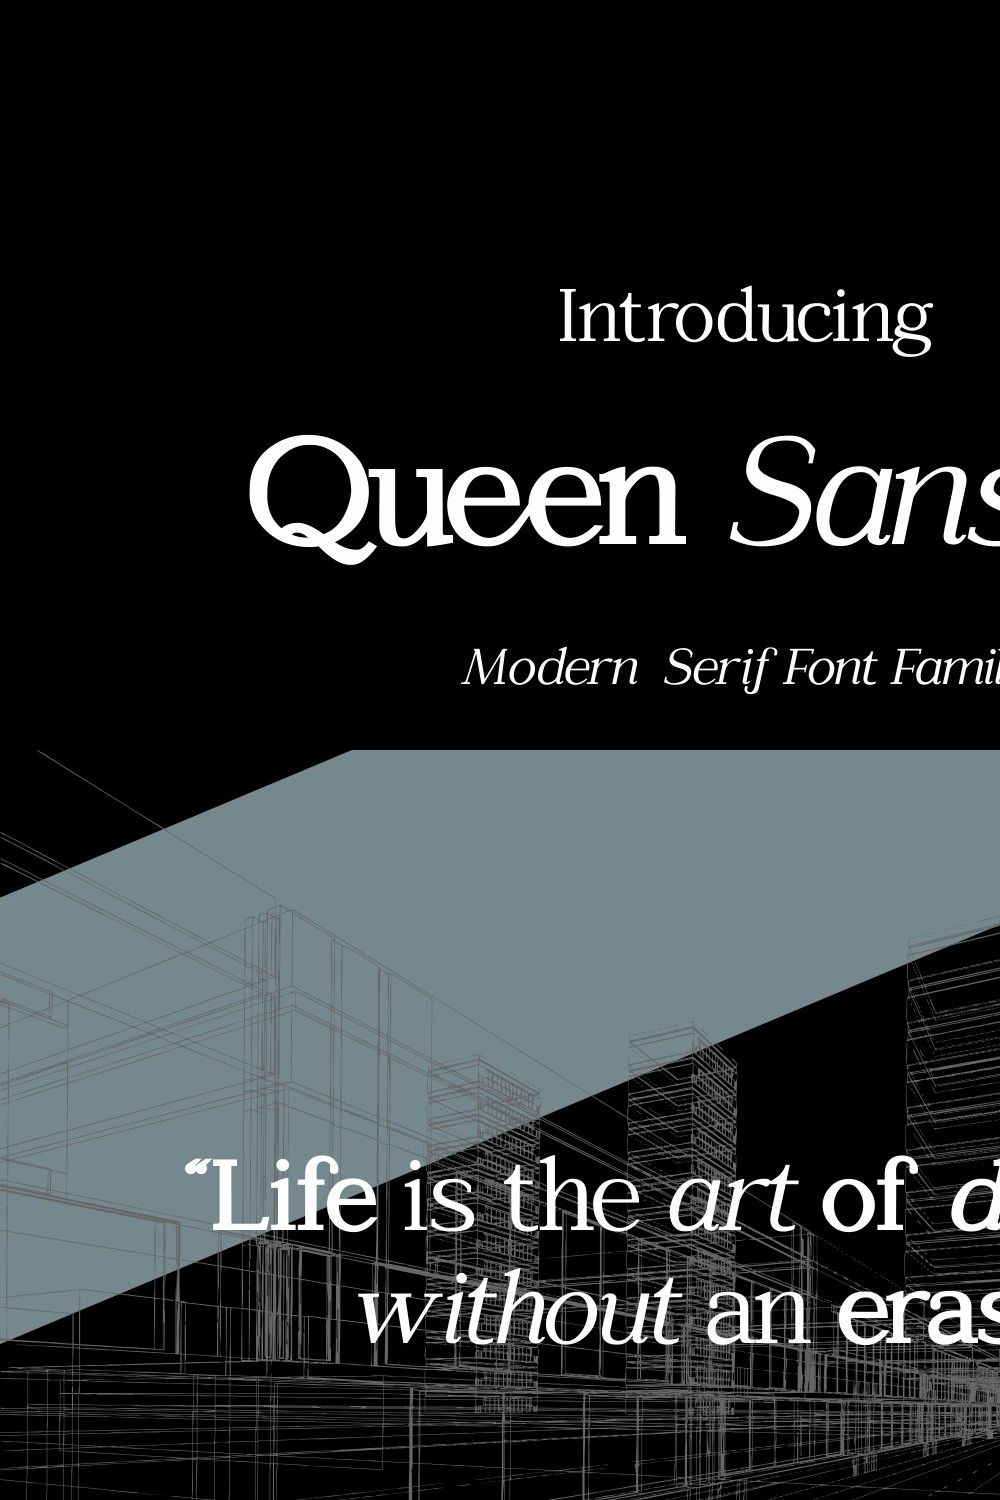 Queen Sansson pinterest preview image.